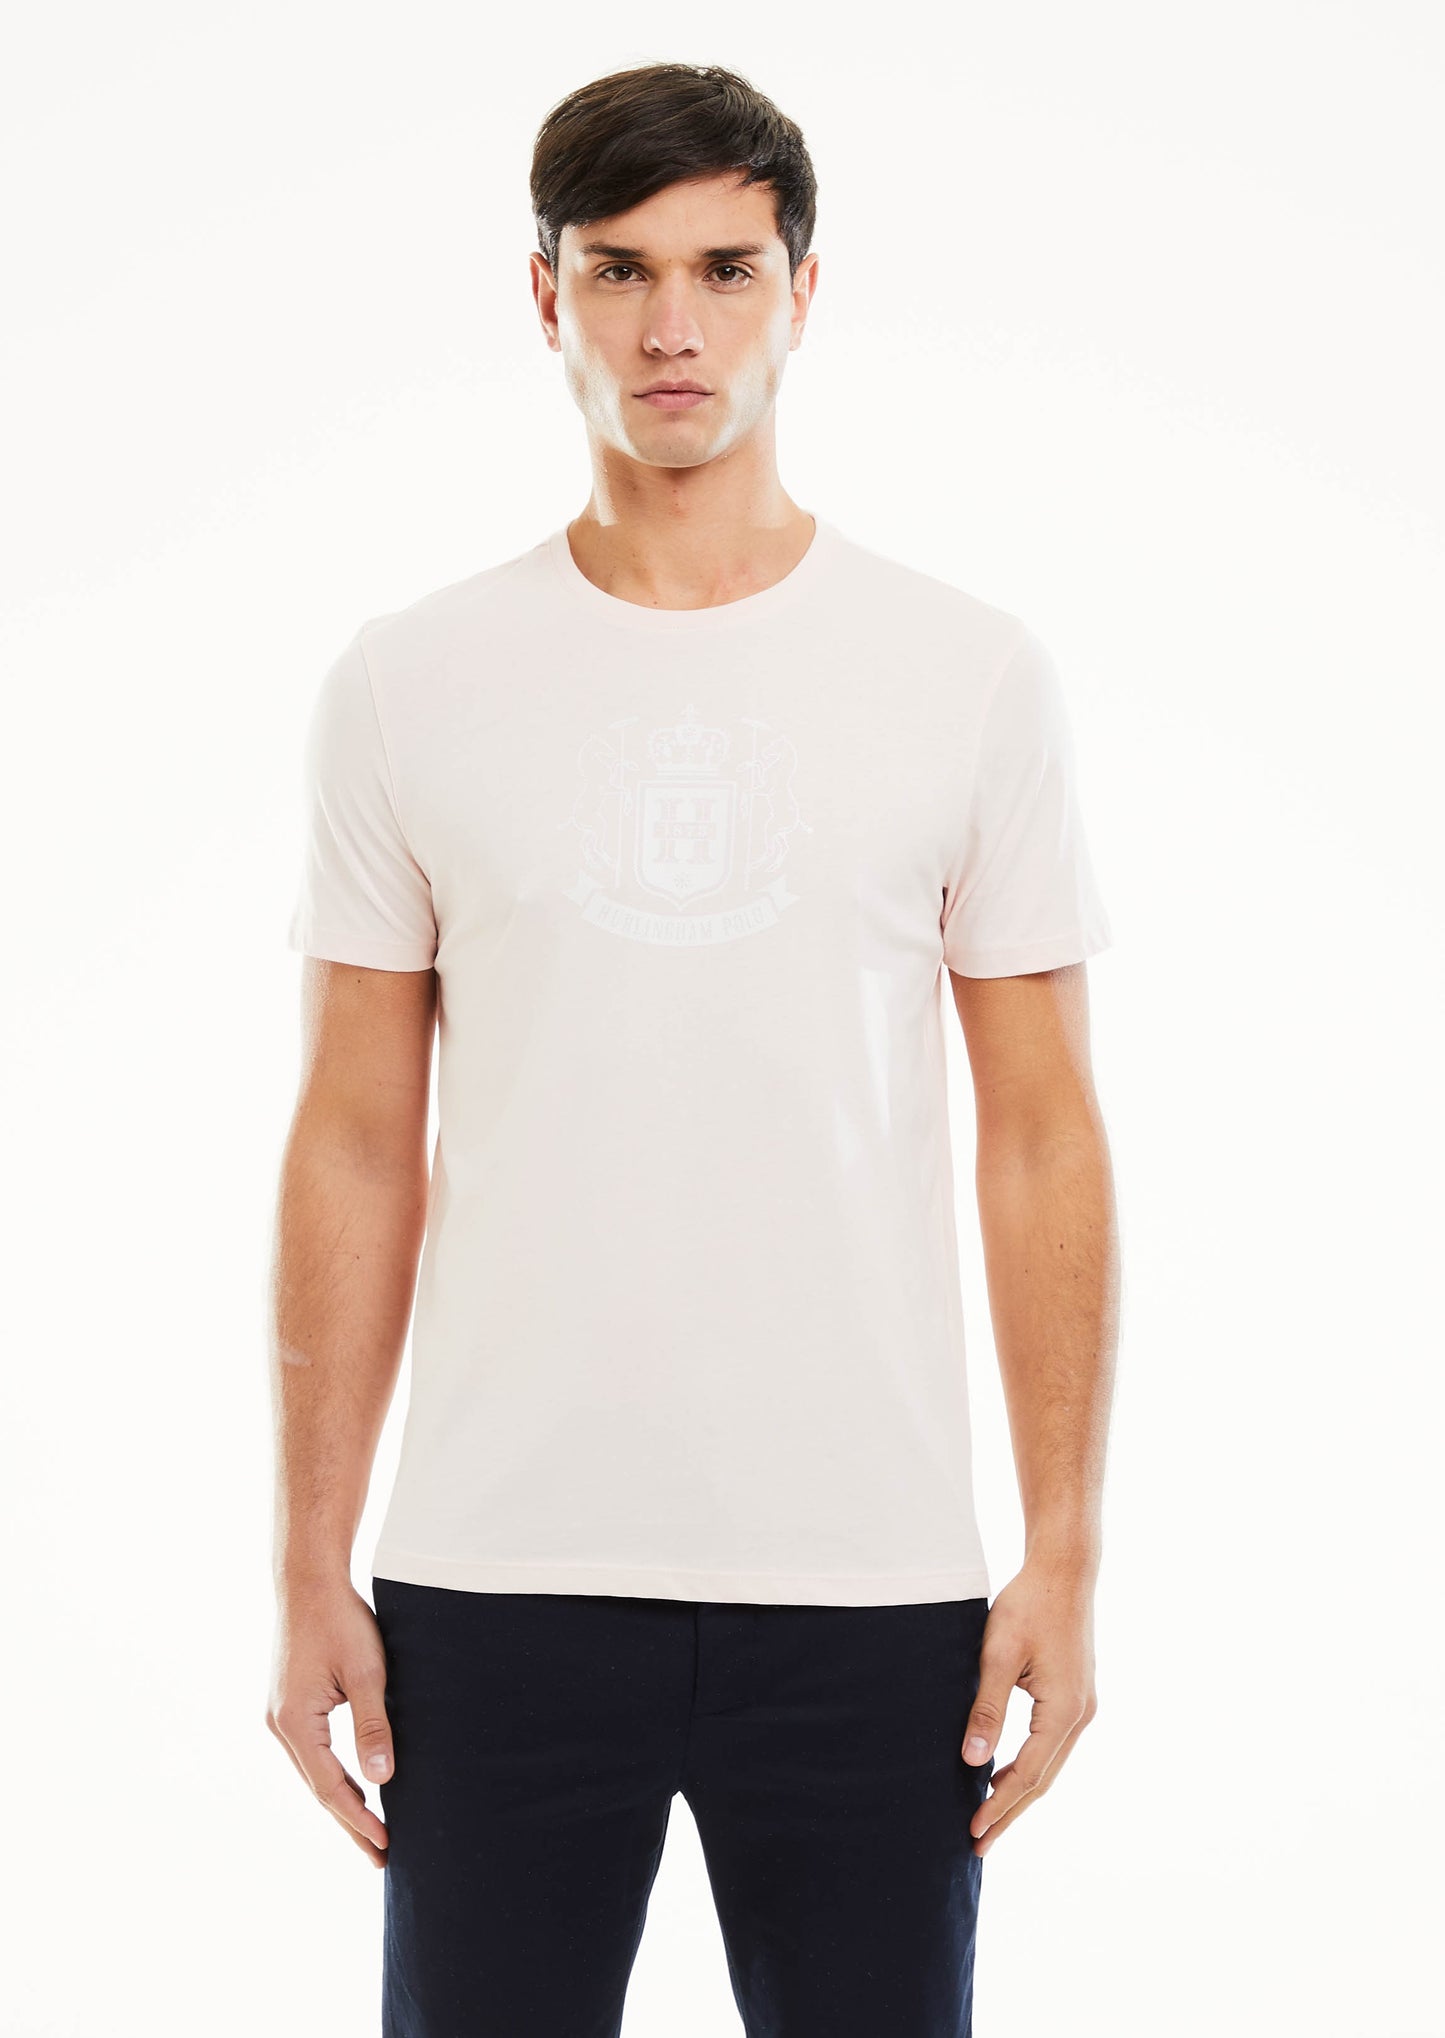 Tartan Crest T-Shirt - Gum